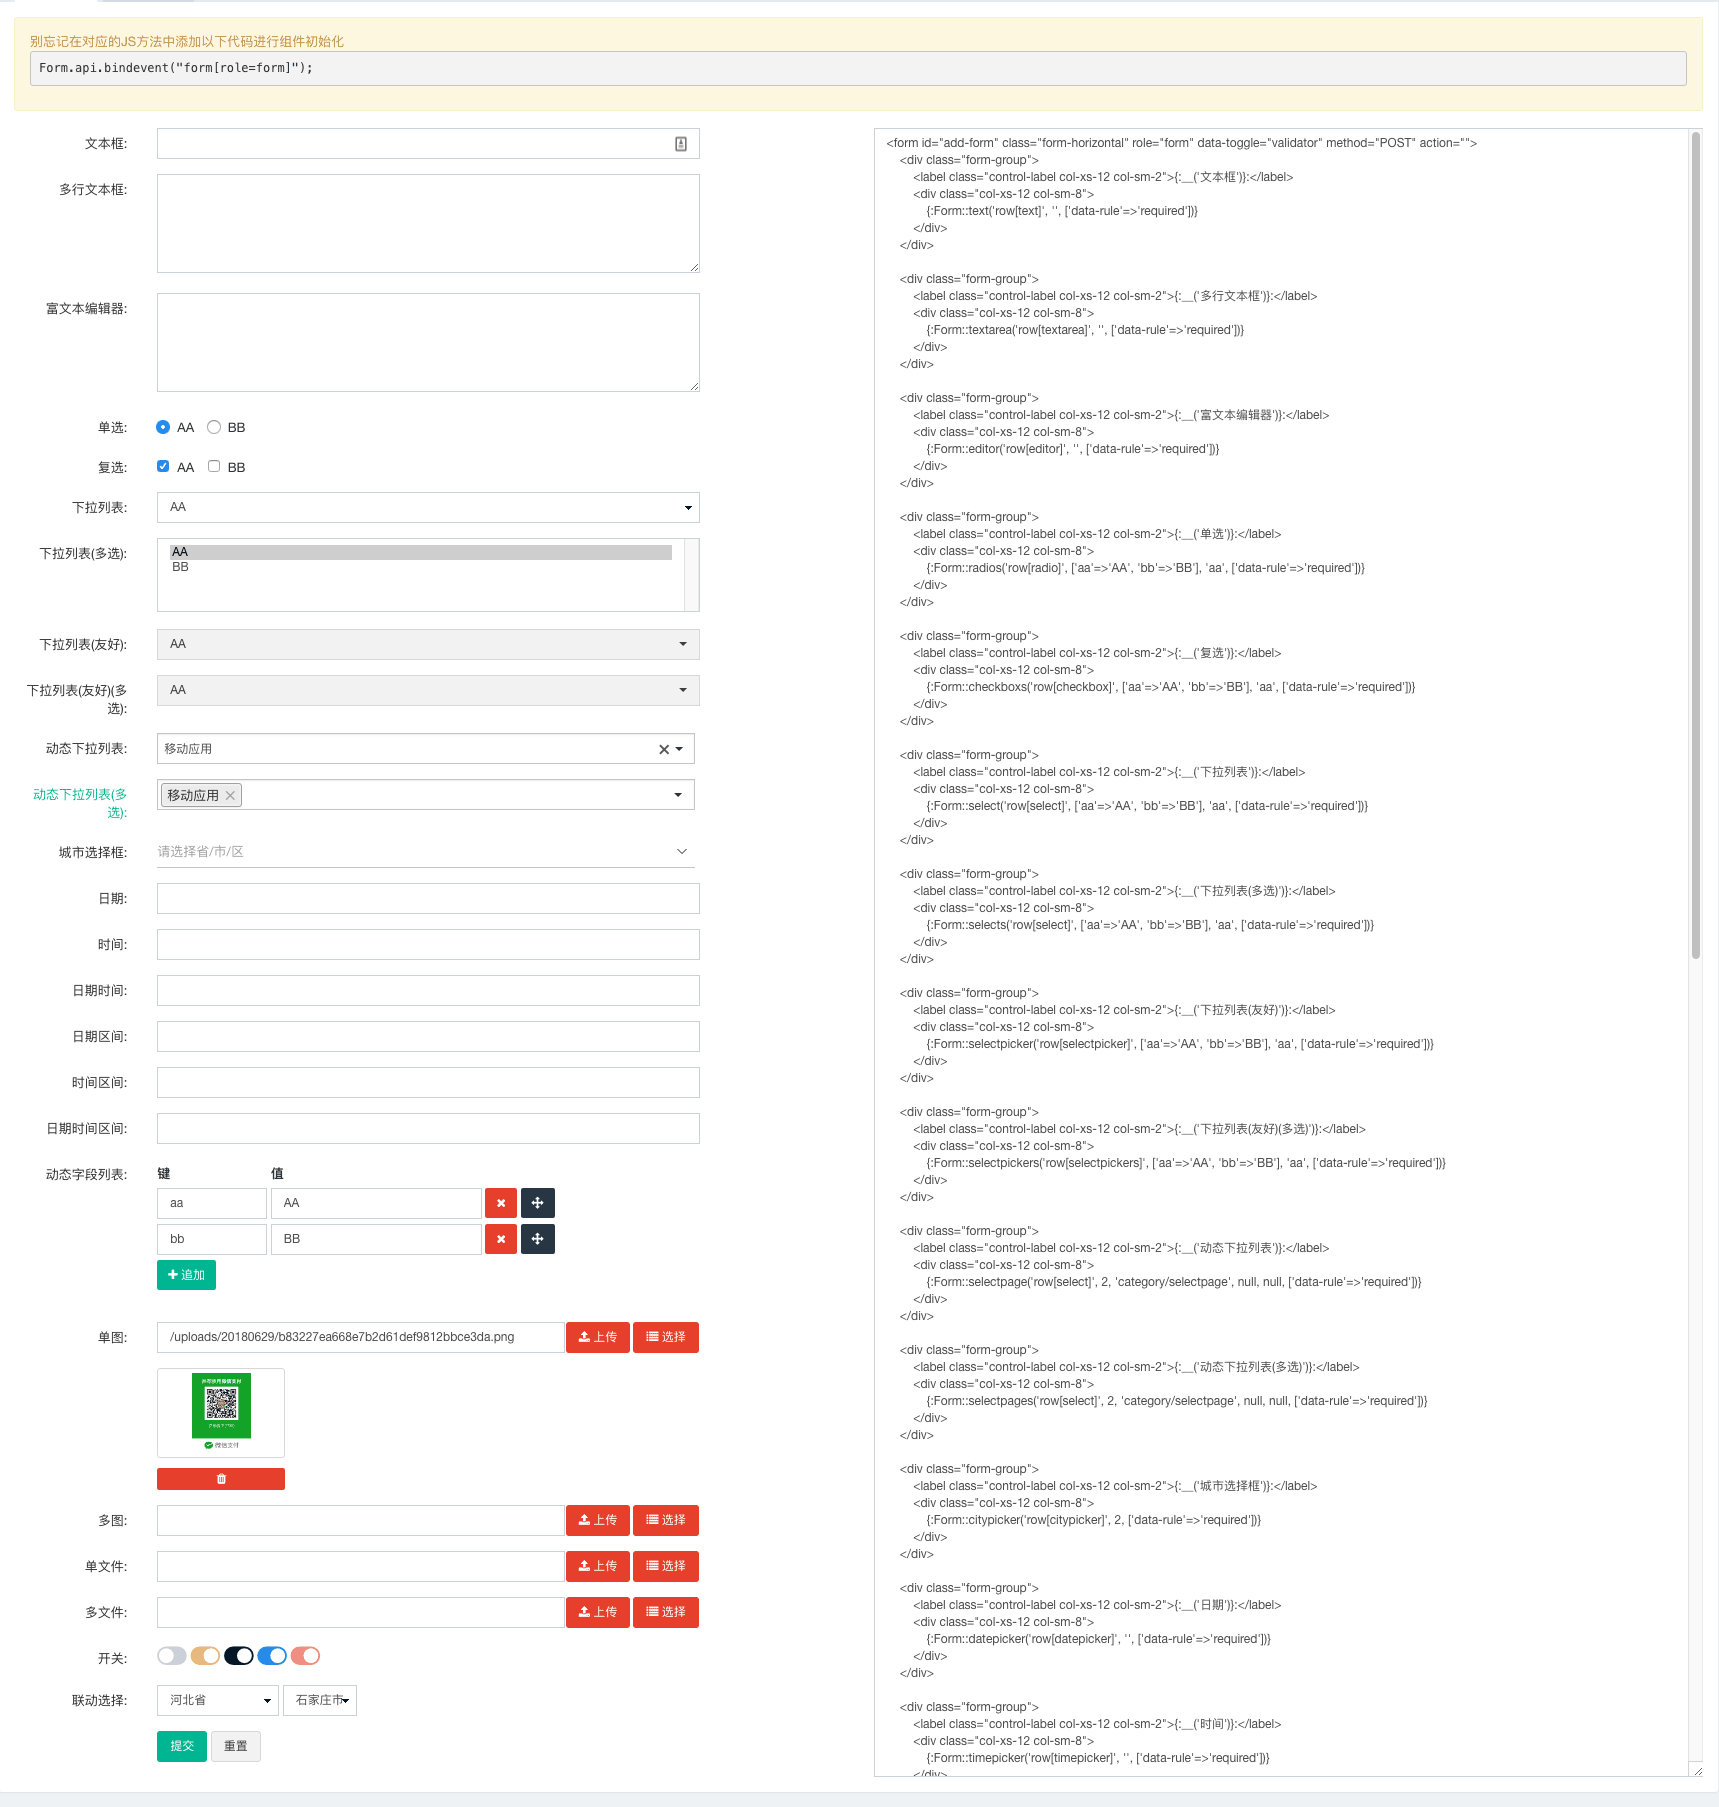 一张图解析FastAdmin中的FormBuilder表单生成器